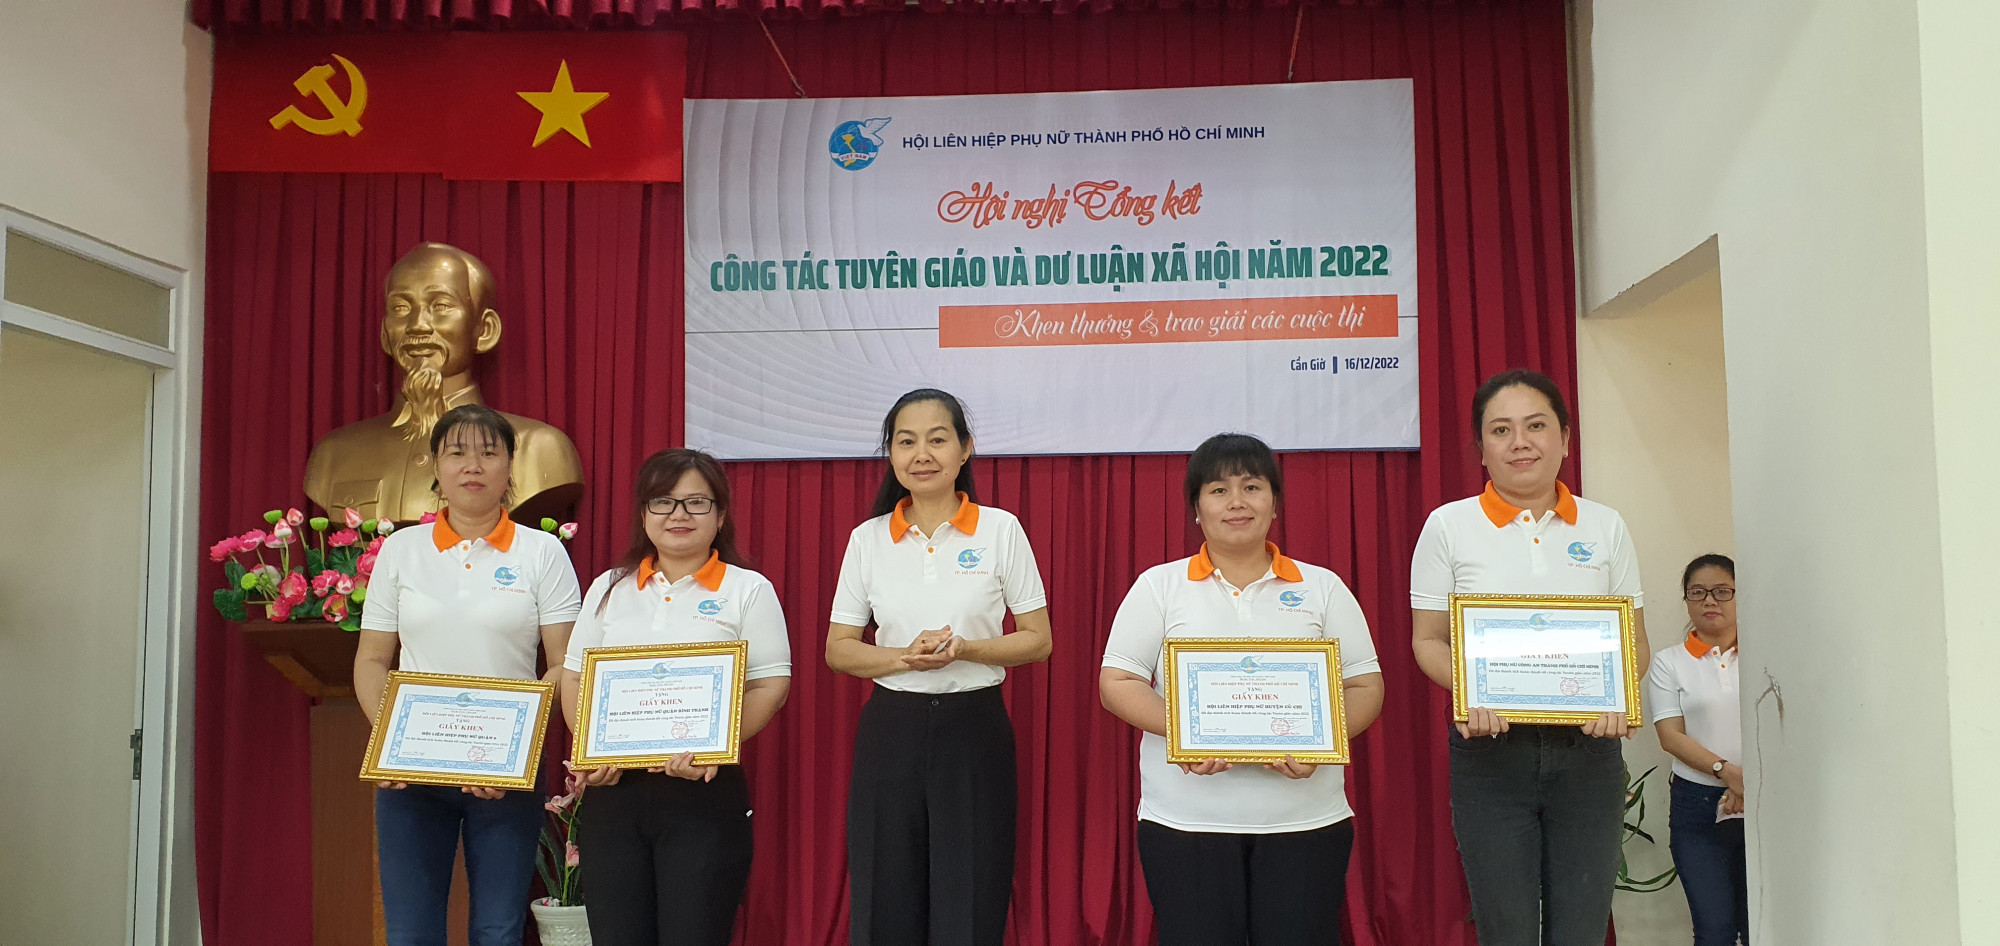 Bà Lâm Thị Ngọc Hoa tặng giấy khen cho các đơn vị làm tốt công tác tuyên giáo và dư luận xã hội